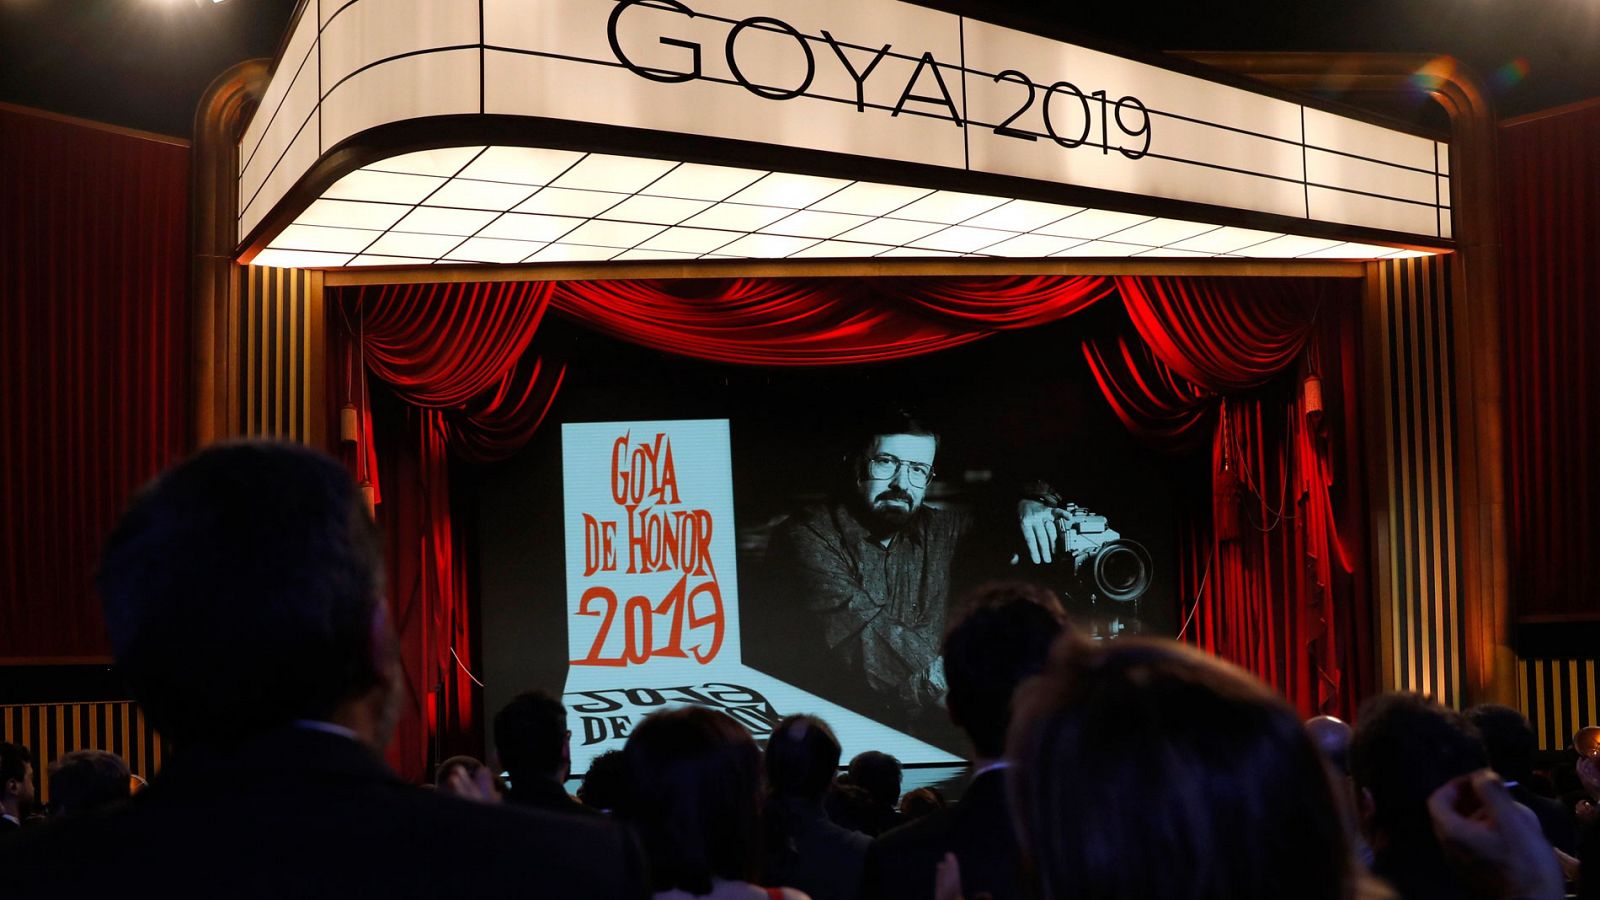 Premios Goya: J.A. Bayona realiza un corto en homenaje al premio Goya de Honor, Chicho Ibáñez Serrador - RTVE.es